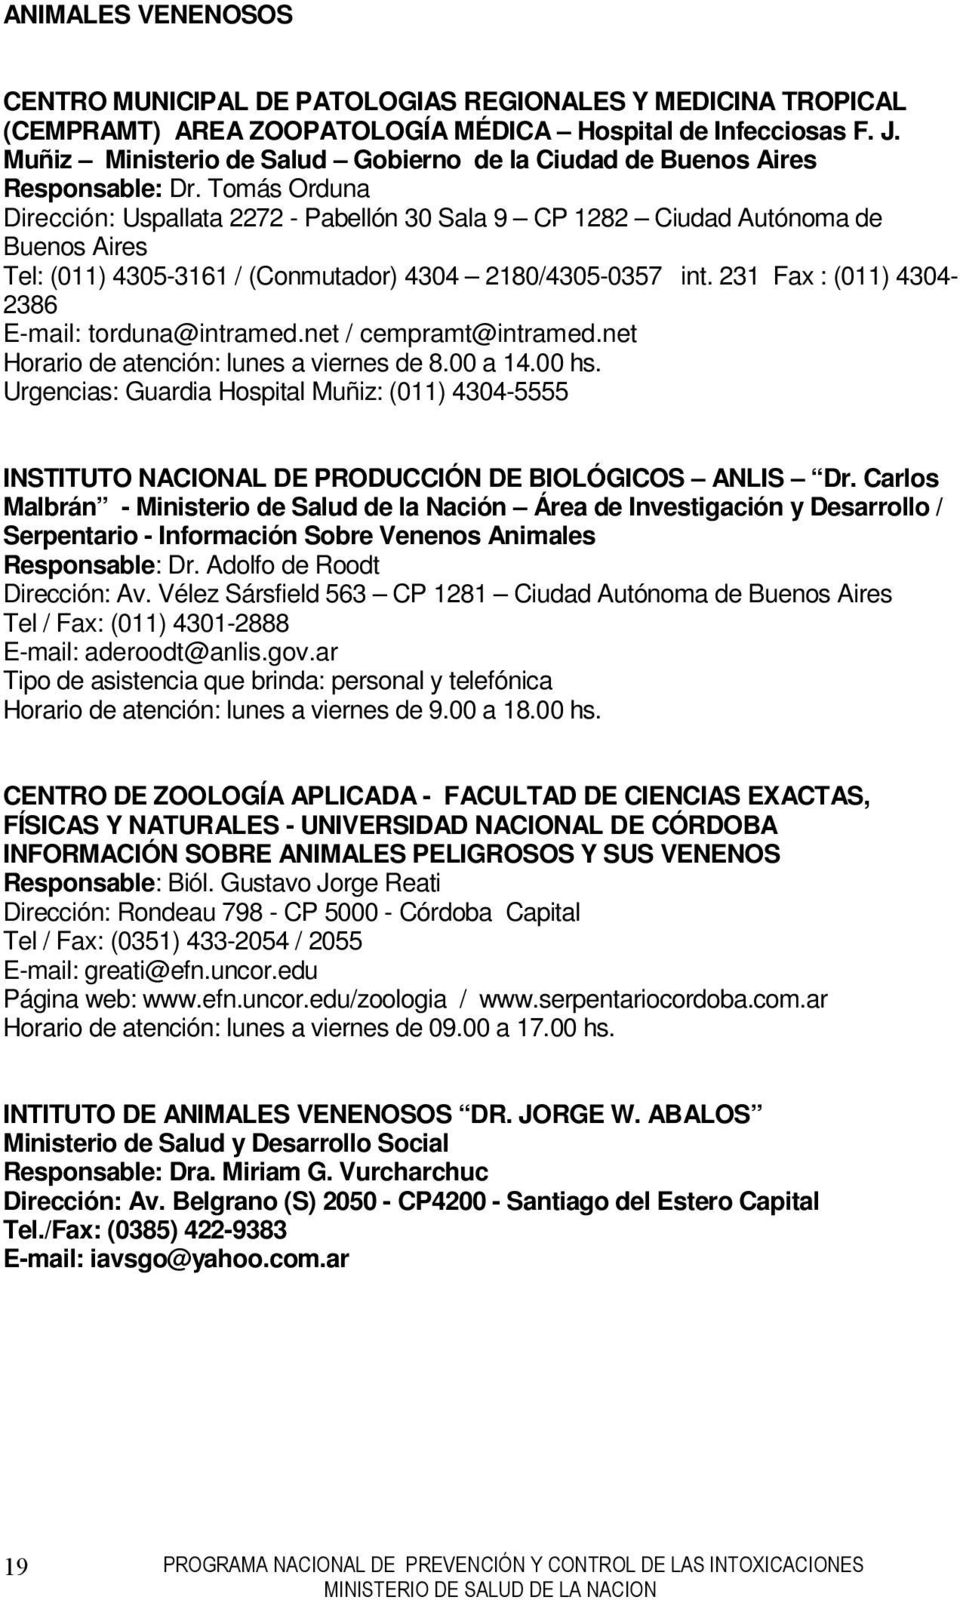 Tomás Orduna Dirección: Uspallata 2272 - Pabellón 30 Sala 9 CP 1282 Ciudad Autónoma de Buenos Aires Tel: (011) 4305-3161 / (Conmutador) 4304 2180/4305-0357 int.